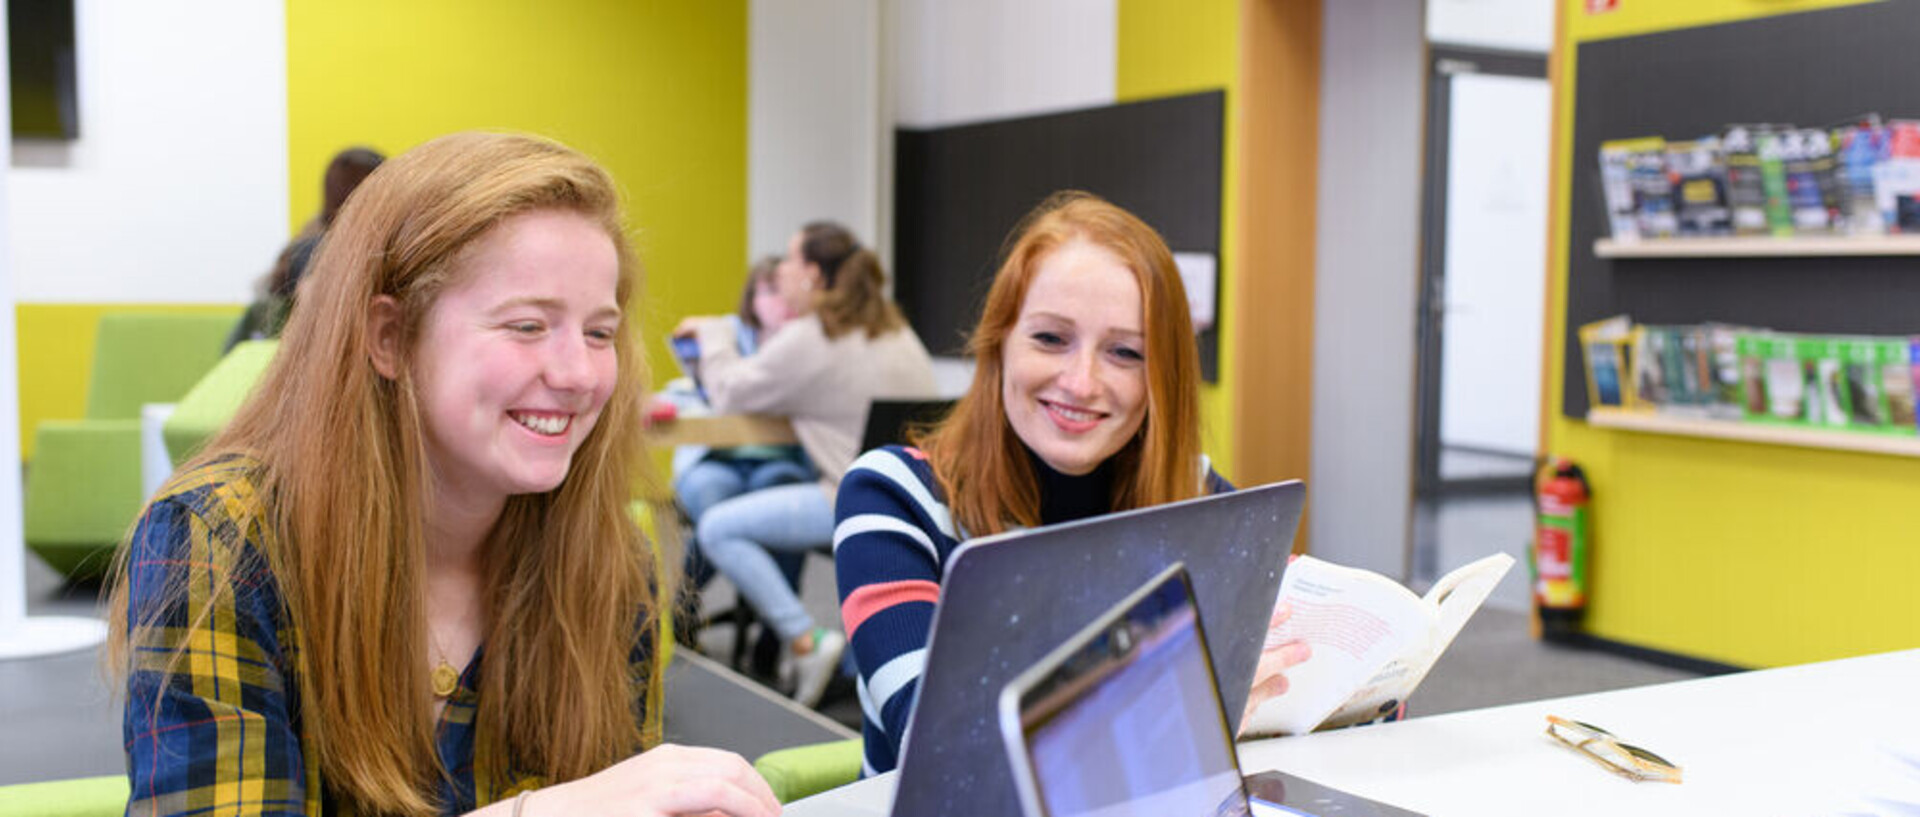 Zwei Studentinnen blicken lachend auf einen Laptop.